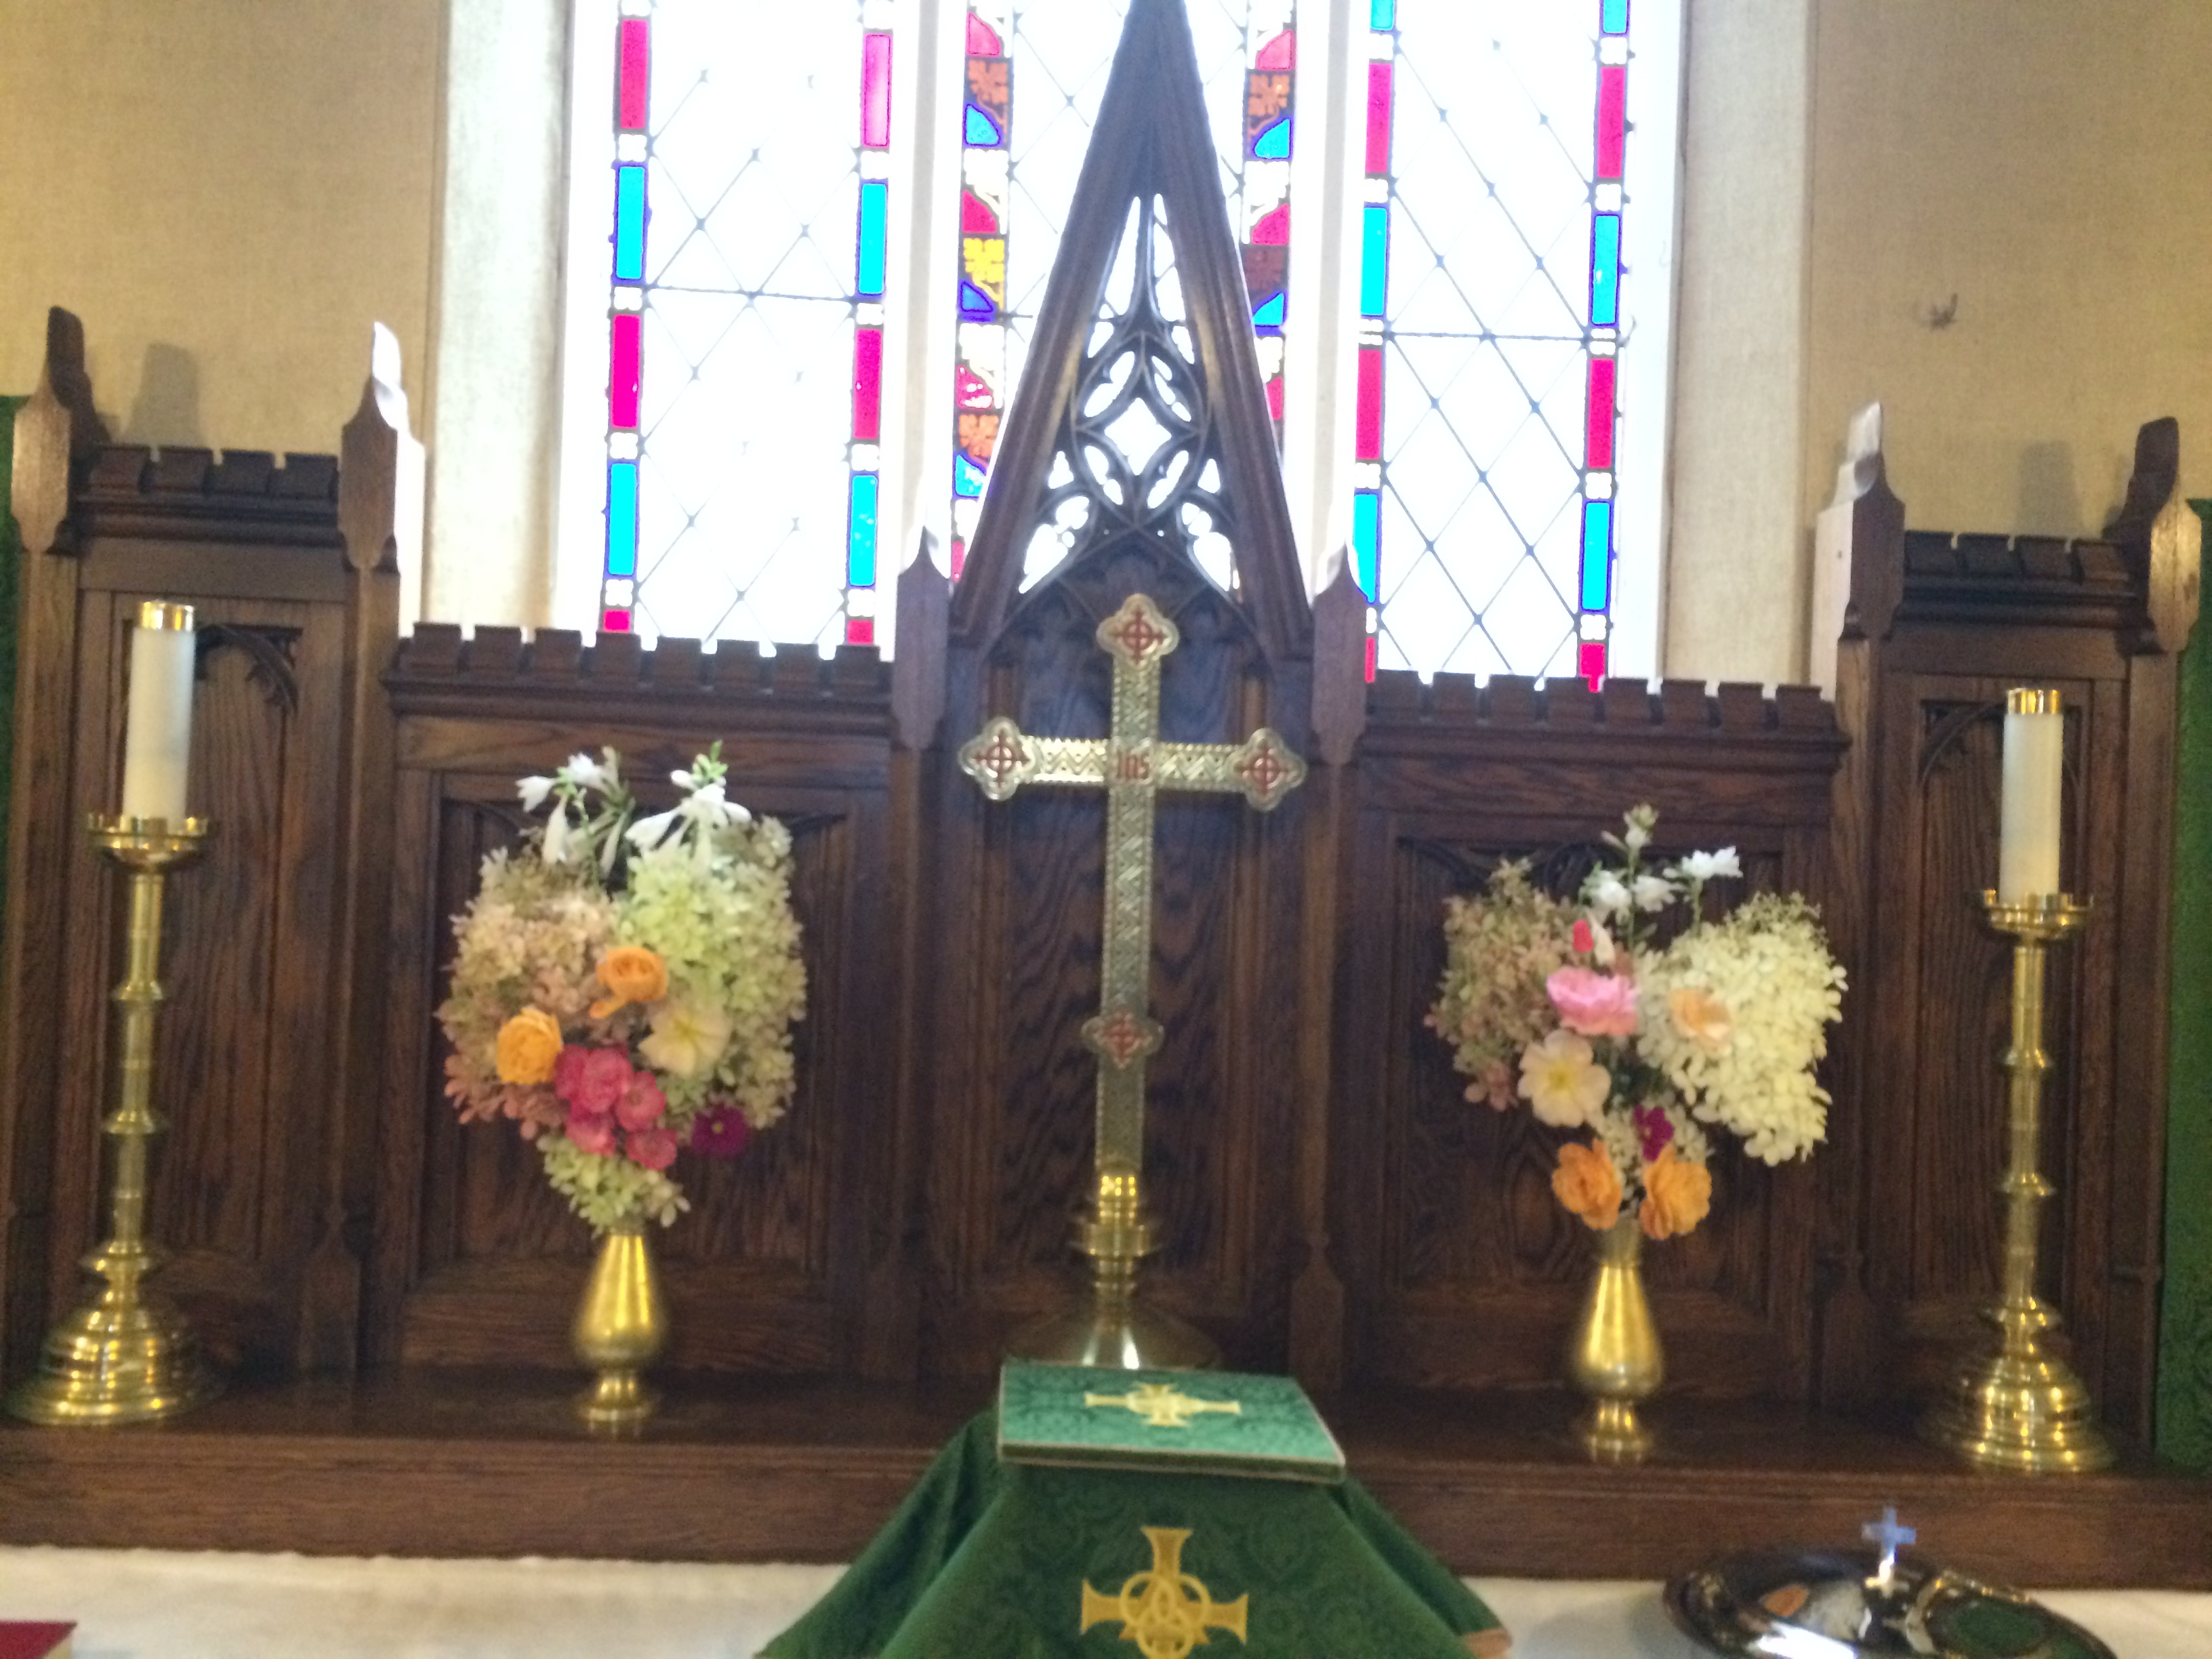 Sunday, September 4th at St. Luke's: Flowers on the Altar.